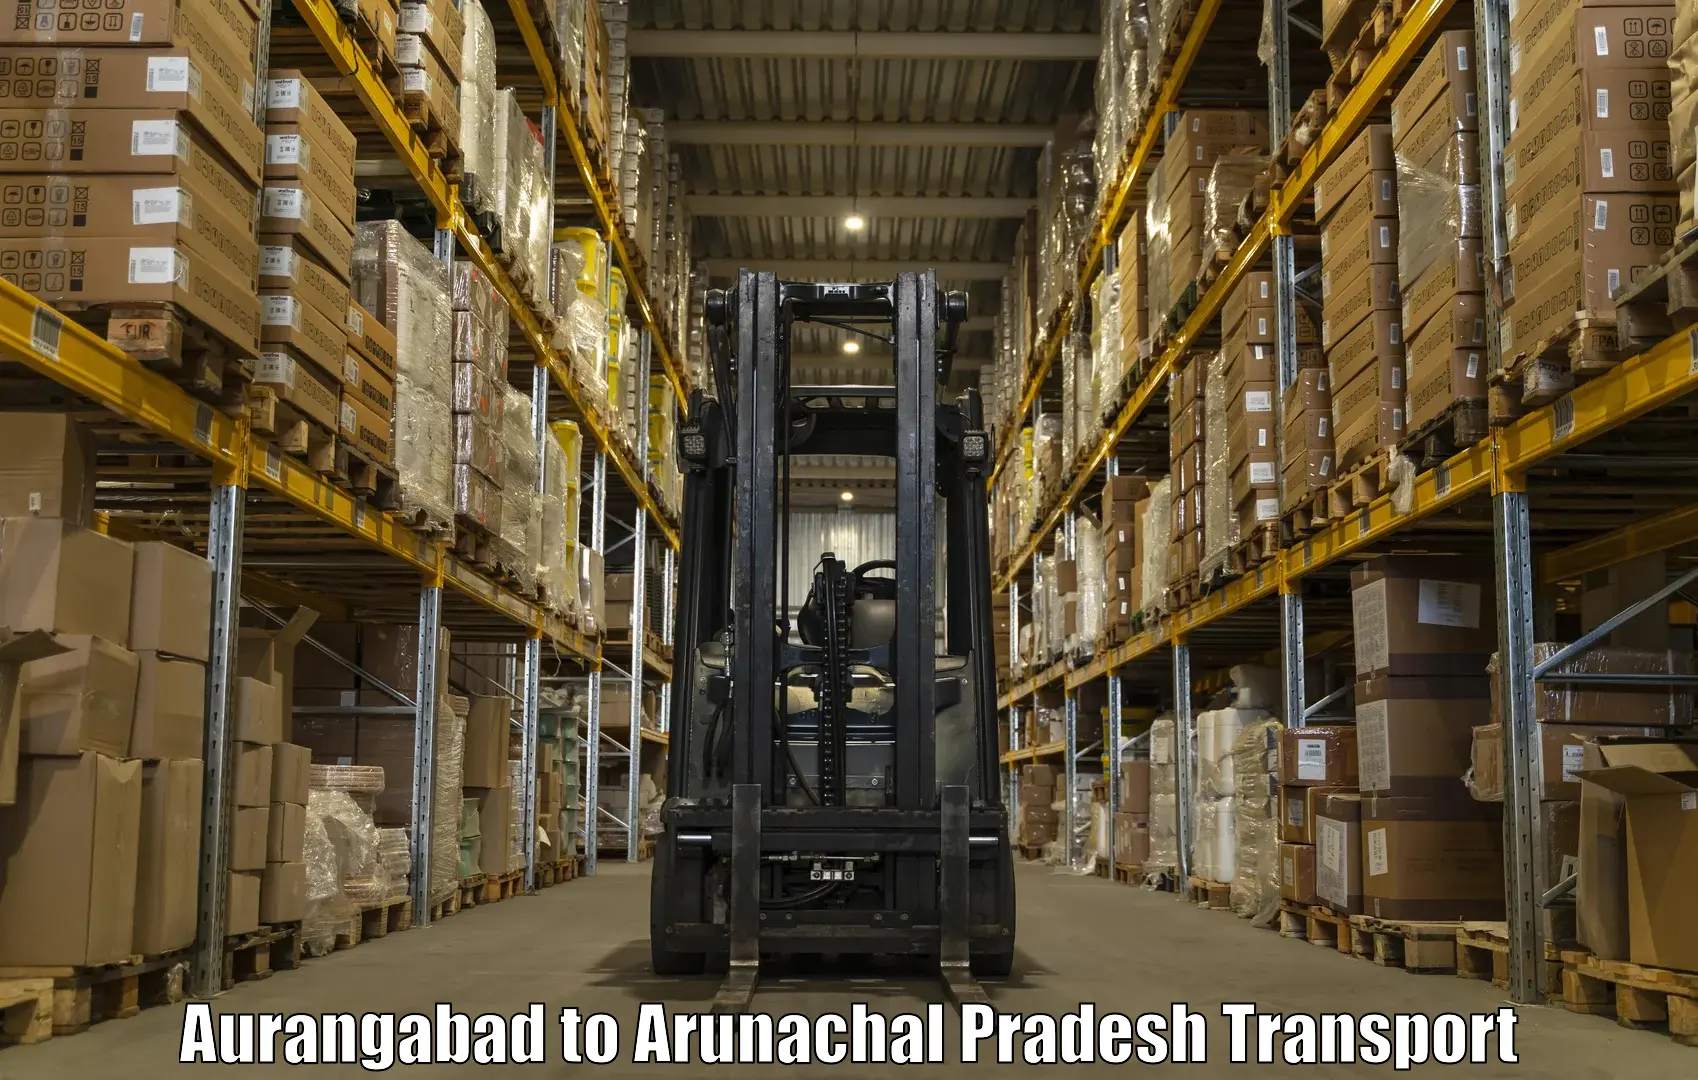 Shipping partner Aurangabad to Chowkham